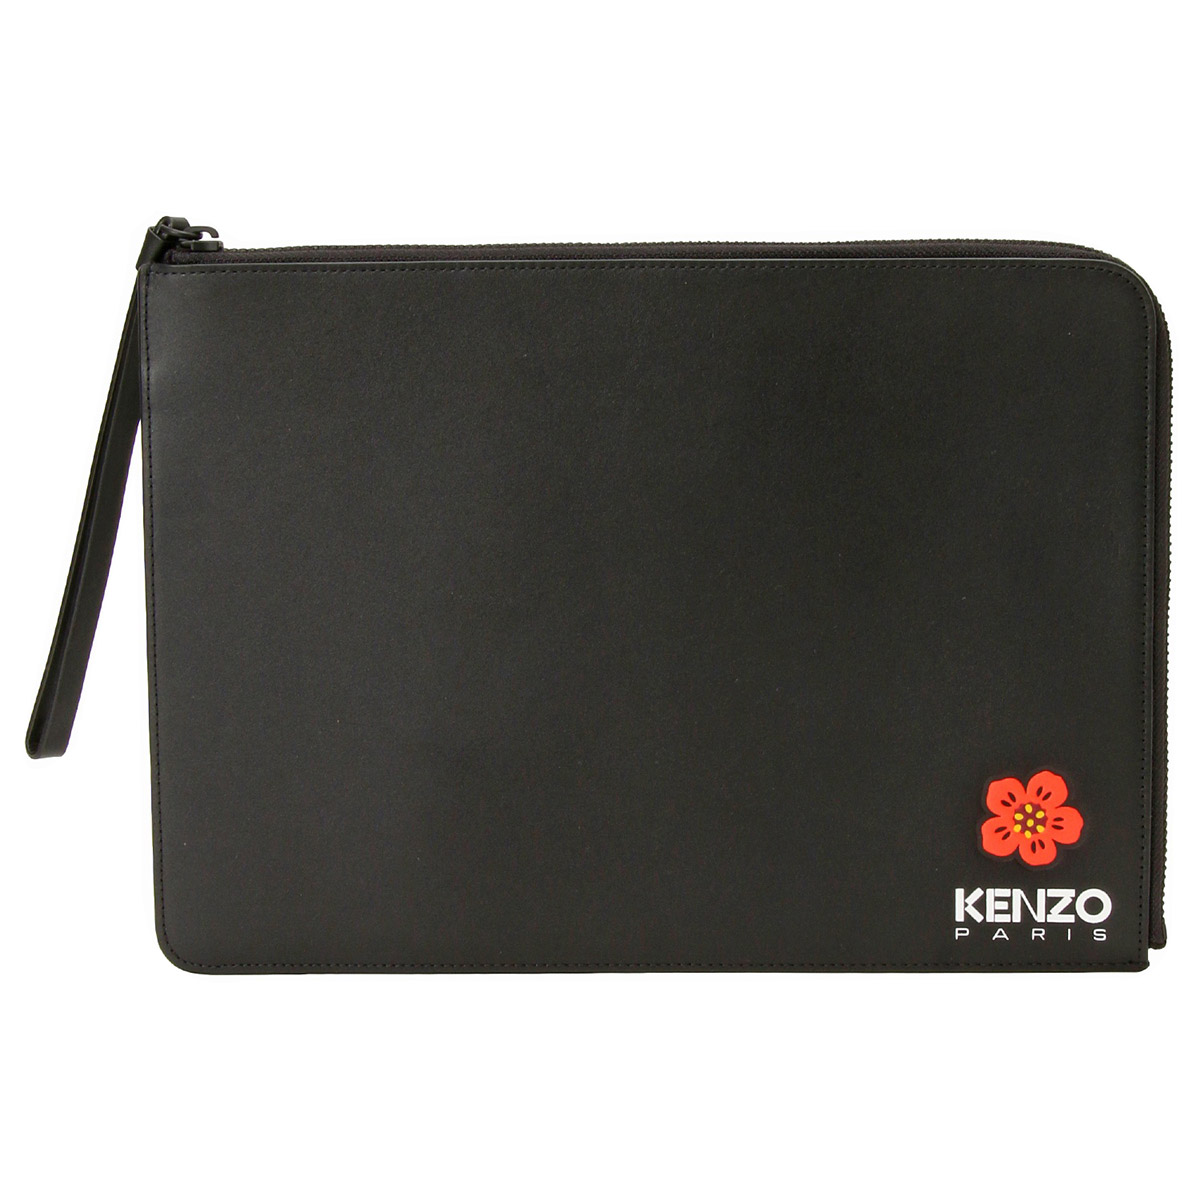 ケンゾー KENZO クラッチバッグ ビッグポーチ セカンドバッグ FD55PM402L43 043 99 KENZO CREST LARGE CLUTCH BAG BLACK ブラック クラ